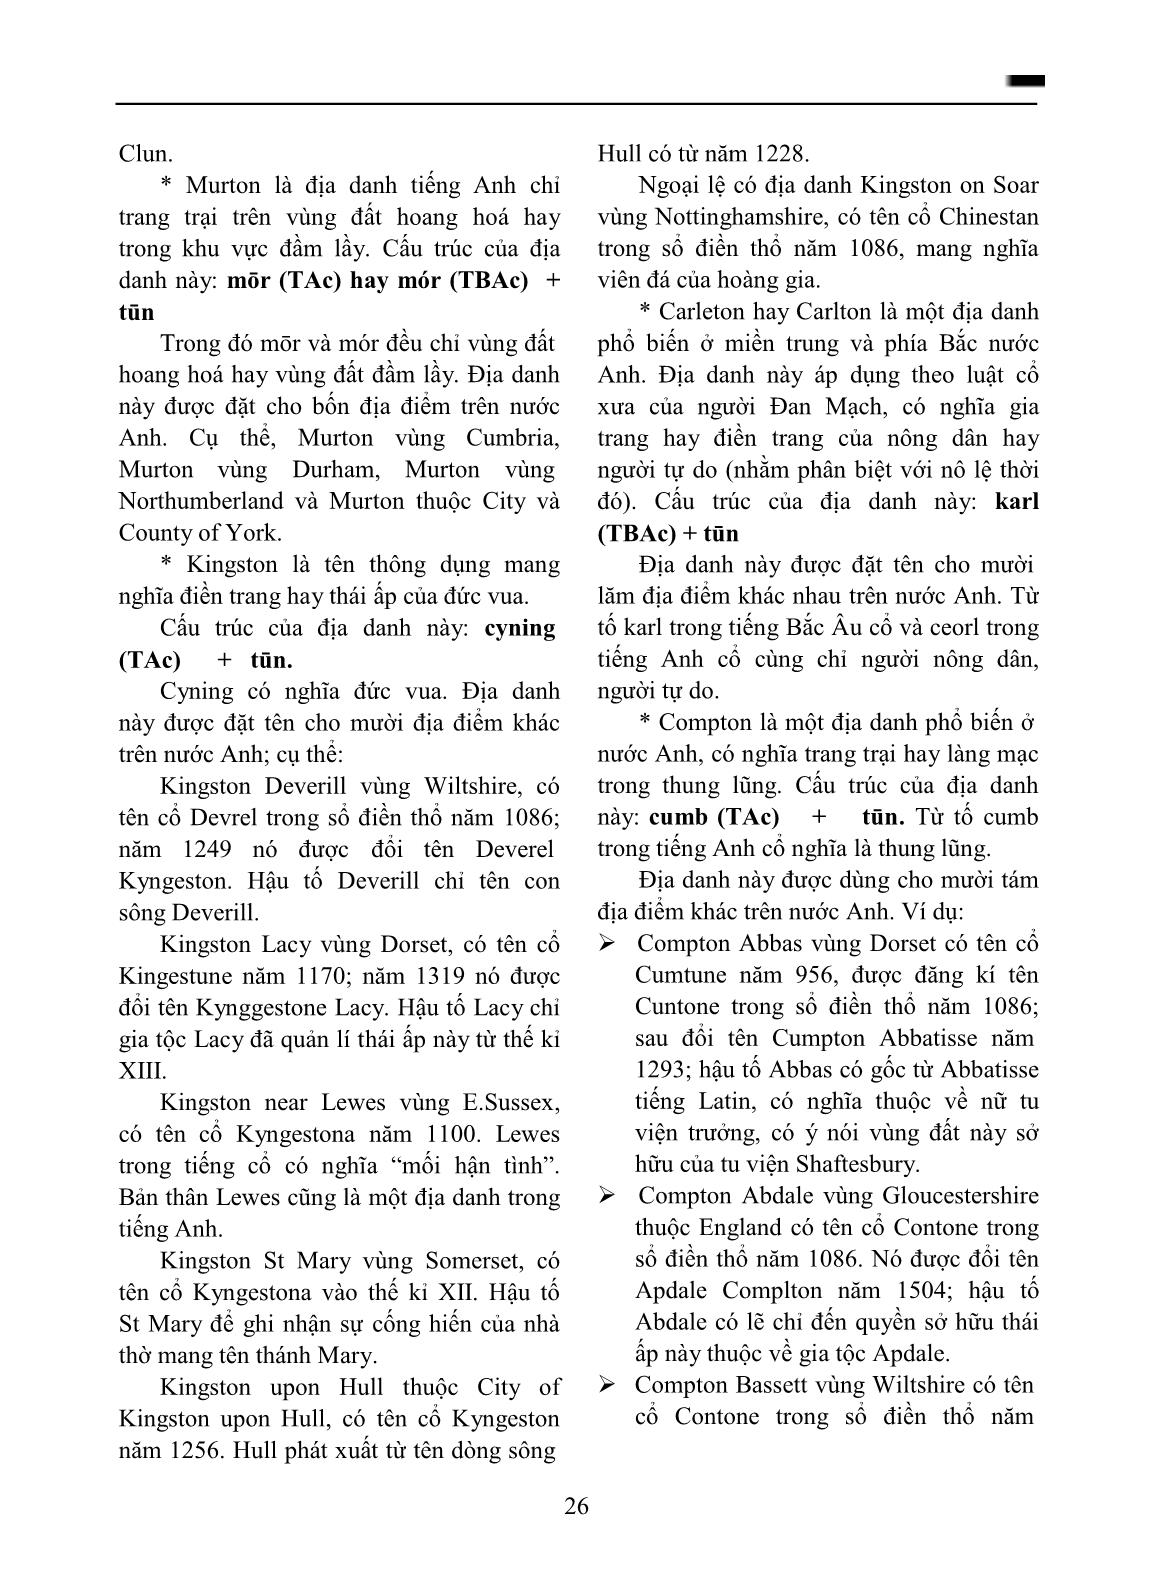 Từ tố cổ hām và tūn trong địa danh tiếng Anh trang 5